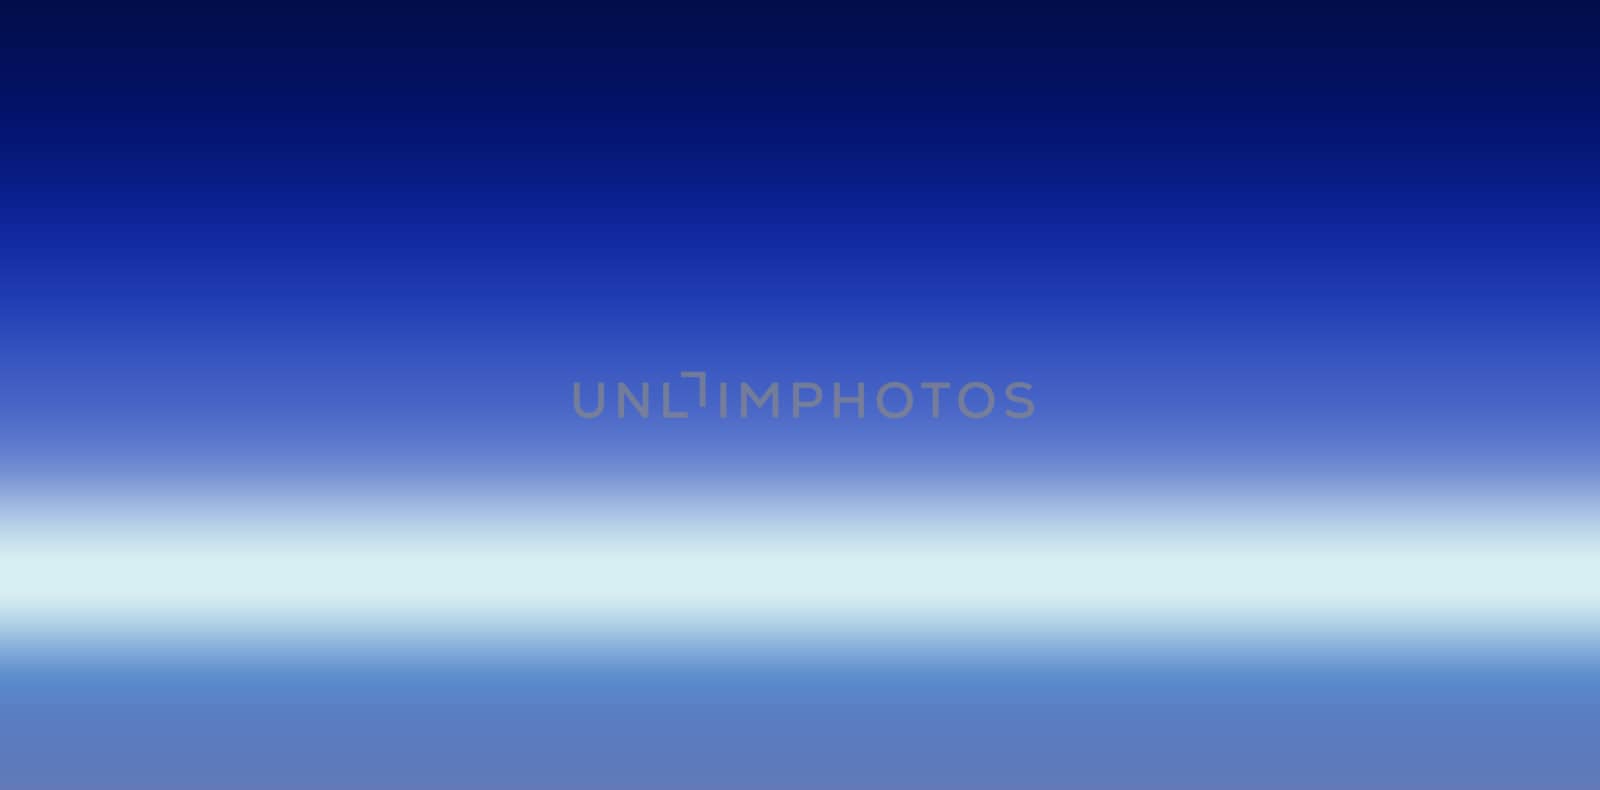 A blurry shot of a blue light by a3701027